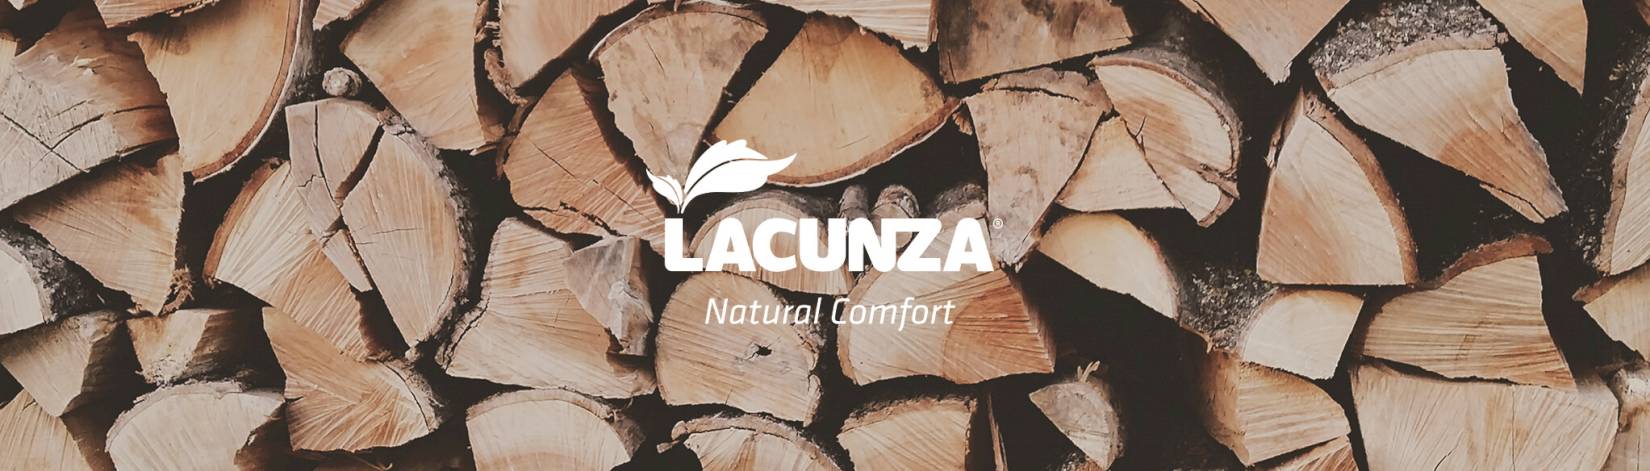 Imagen de marca Lacunza